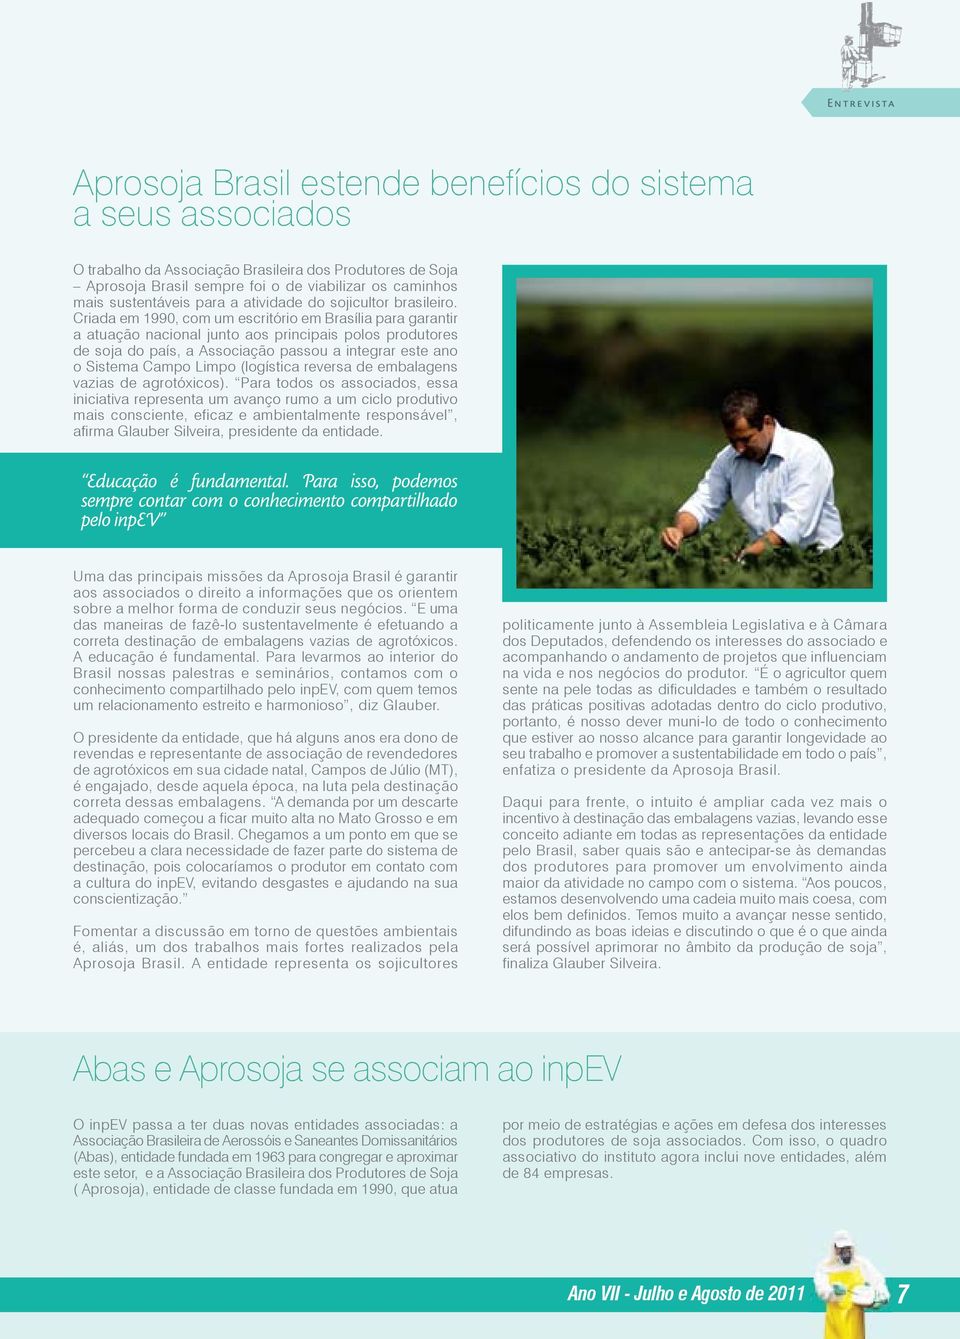 Criada em 1990, com um escritório em Brasília para garantir a atuação nacional junto aos principais polos produtores de soja do país, a Associação passou a integrar este ano o Sistema Campo Limpo